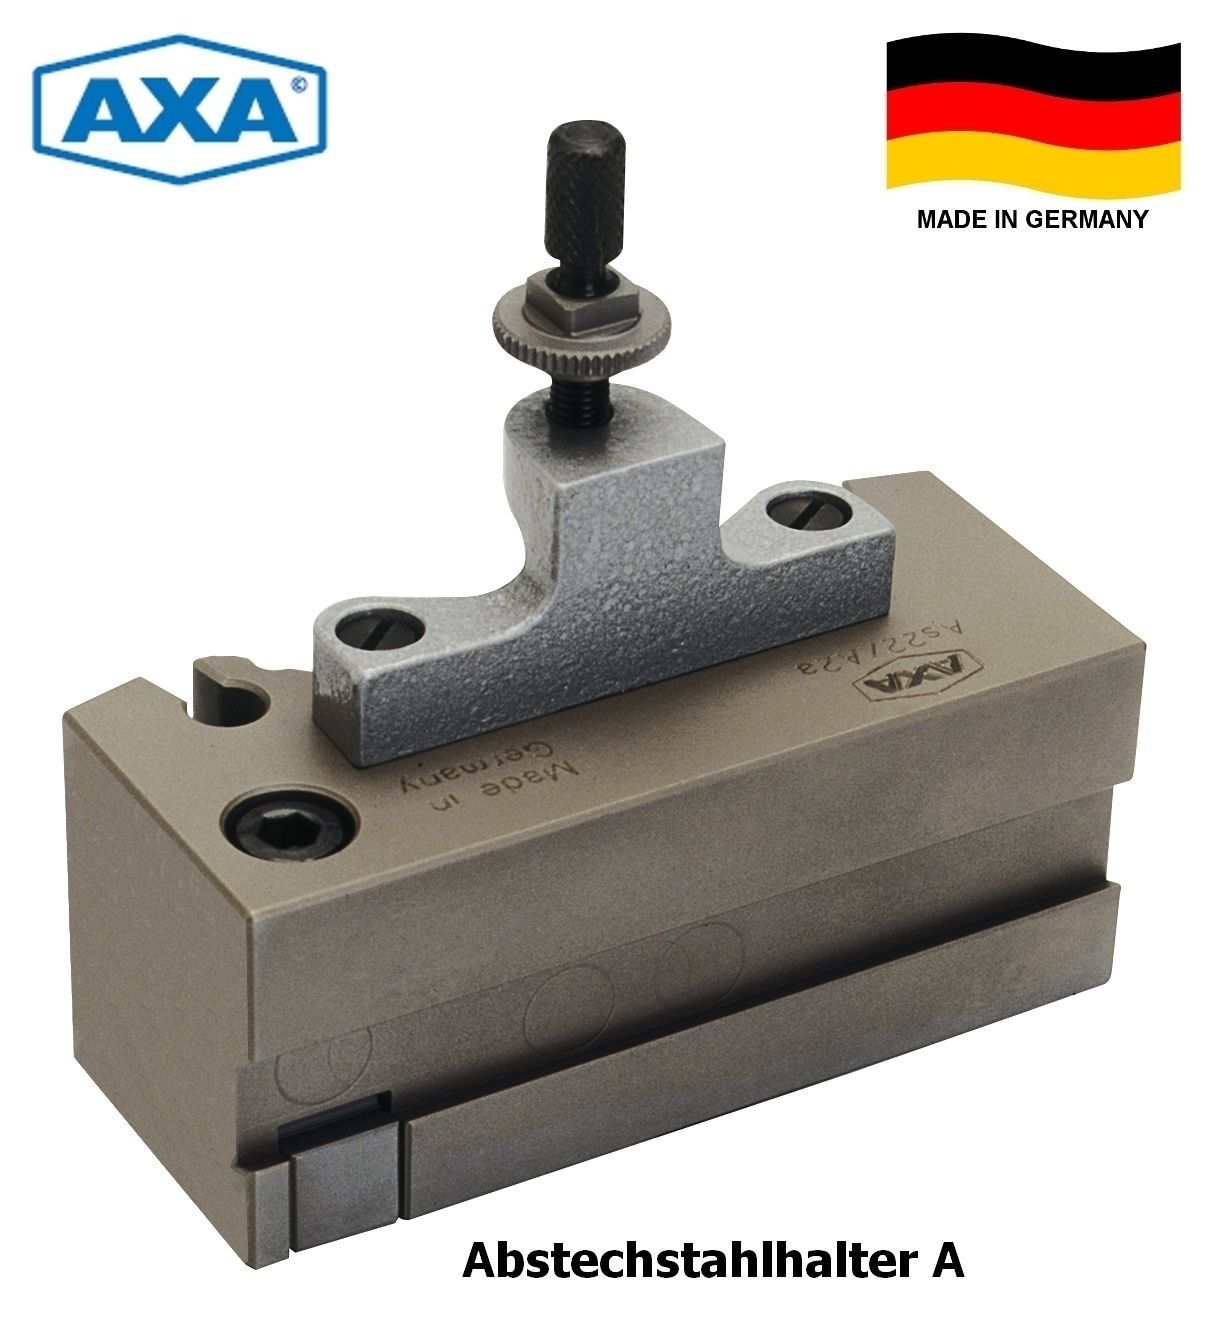 AXA Schnellwechsel-Abstechhalter A | As11 - A0